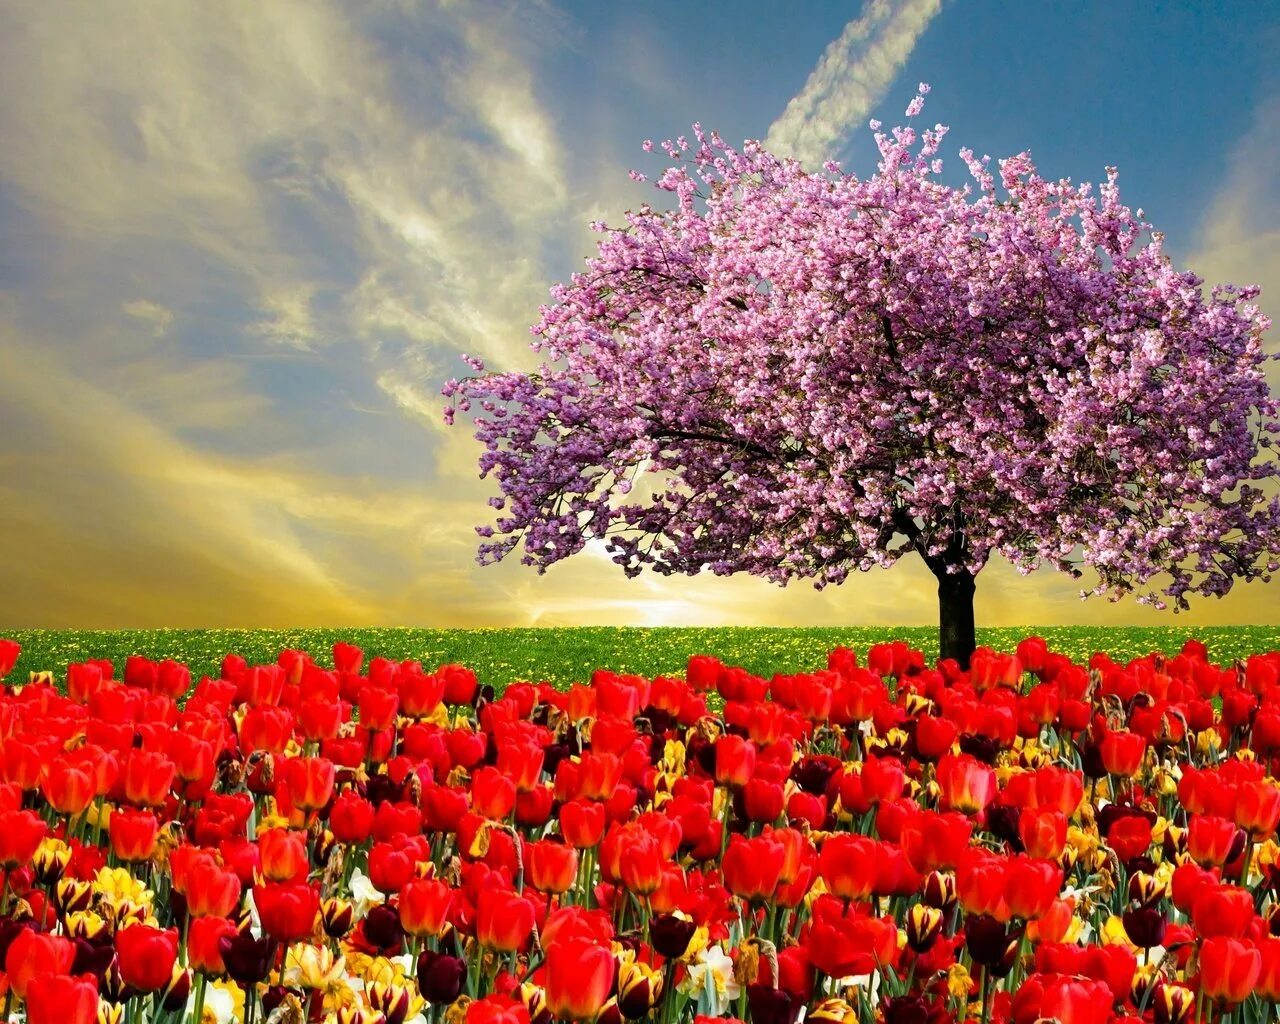 Bahor gullari. Цветущие деревья. Красивое цветущее дерево. Весеннее дерево. Красивые цветущие деревья.